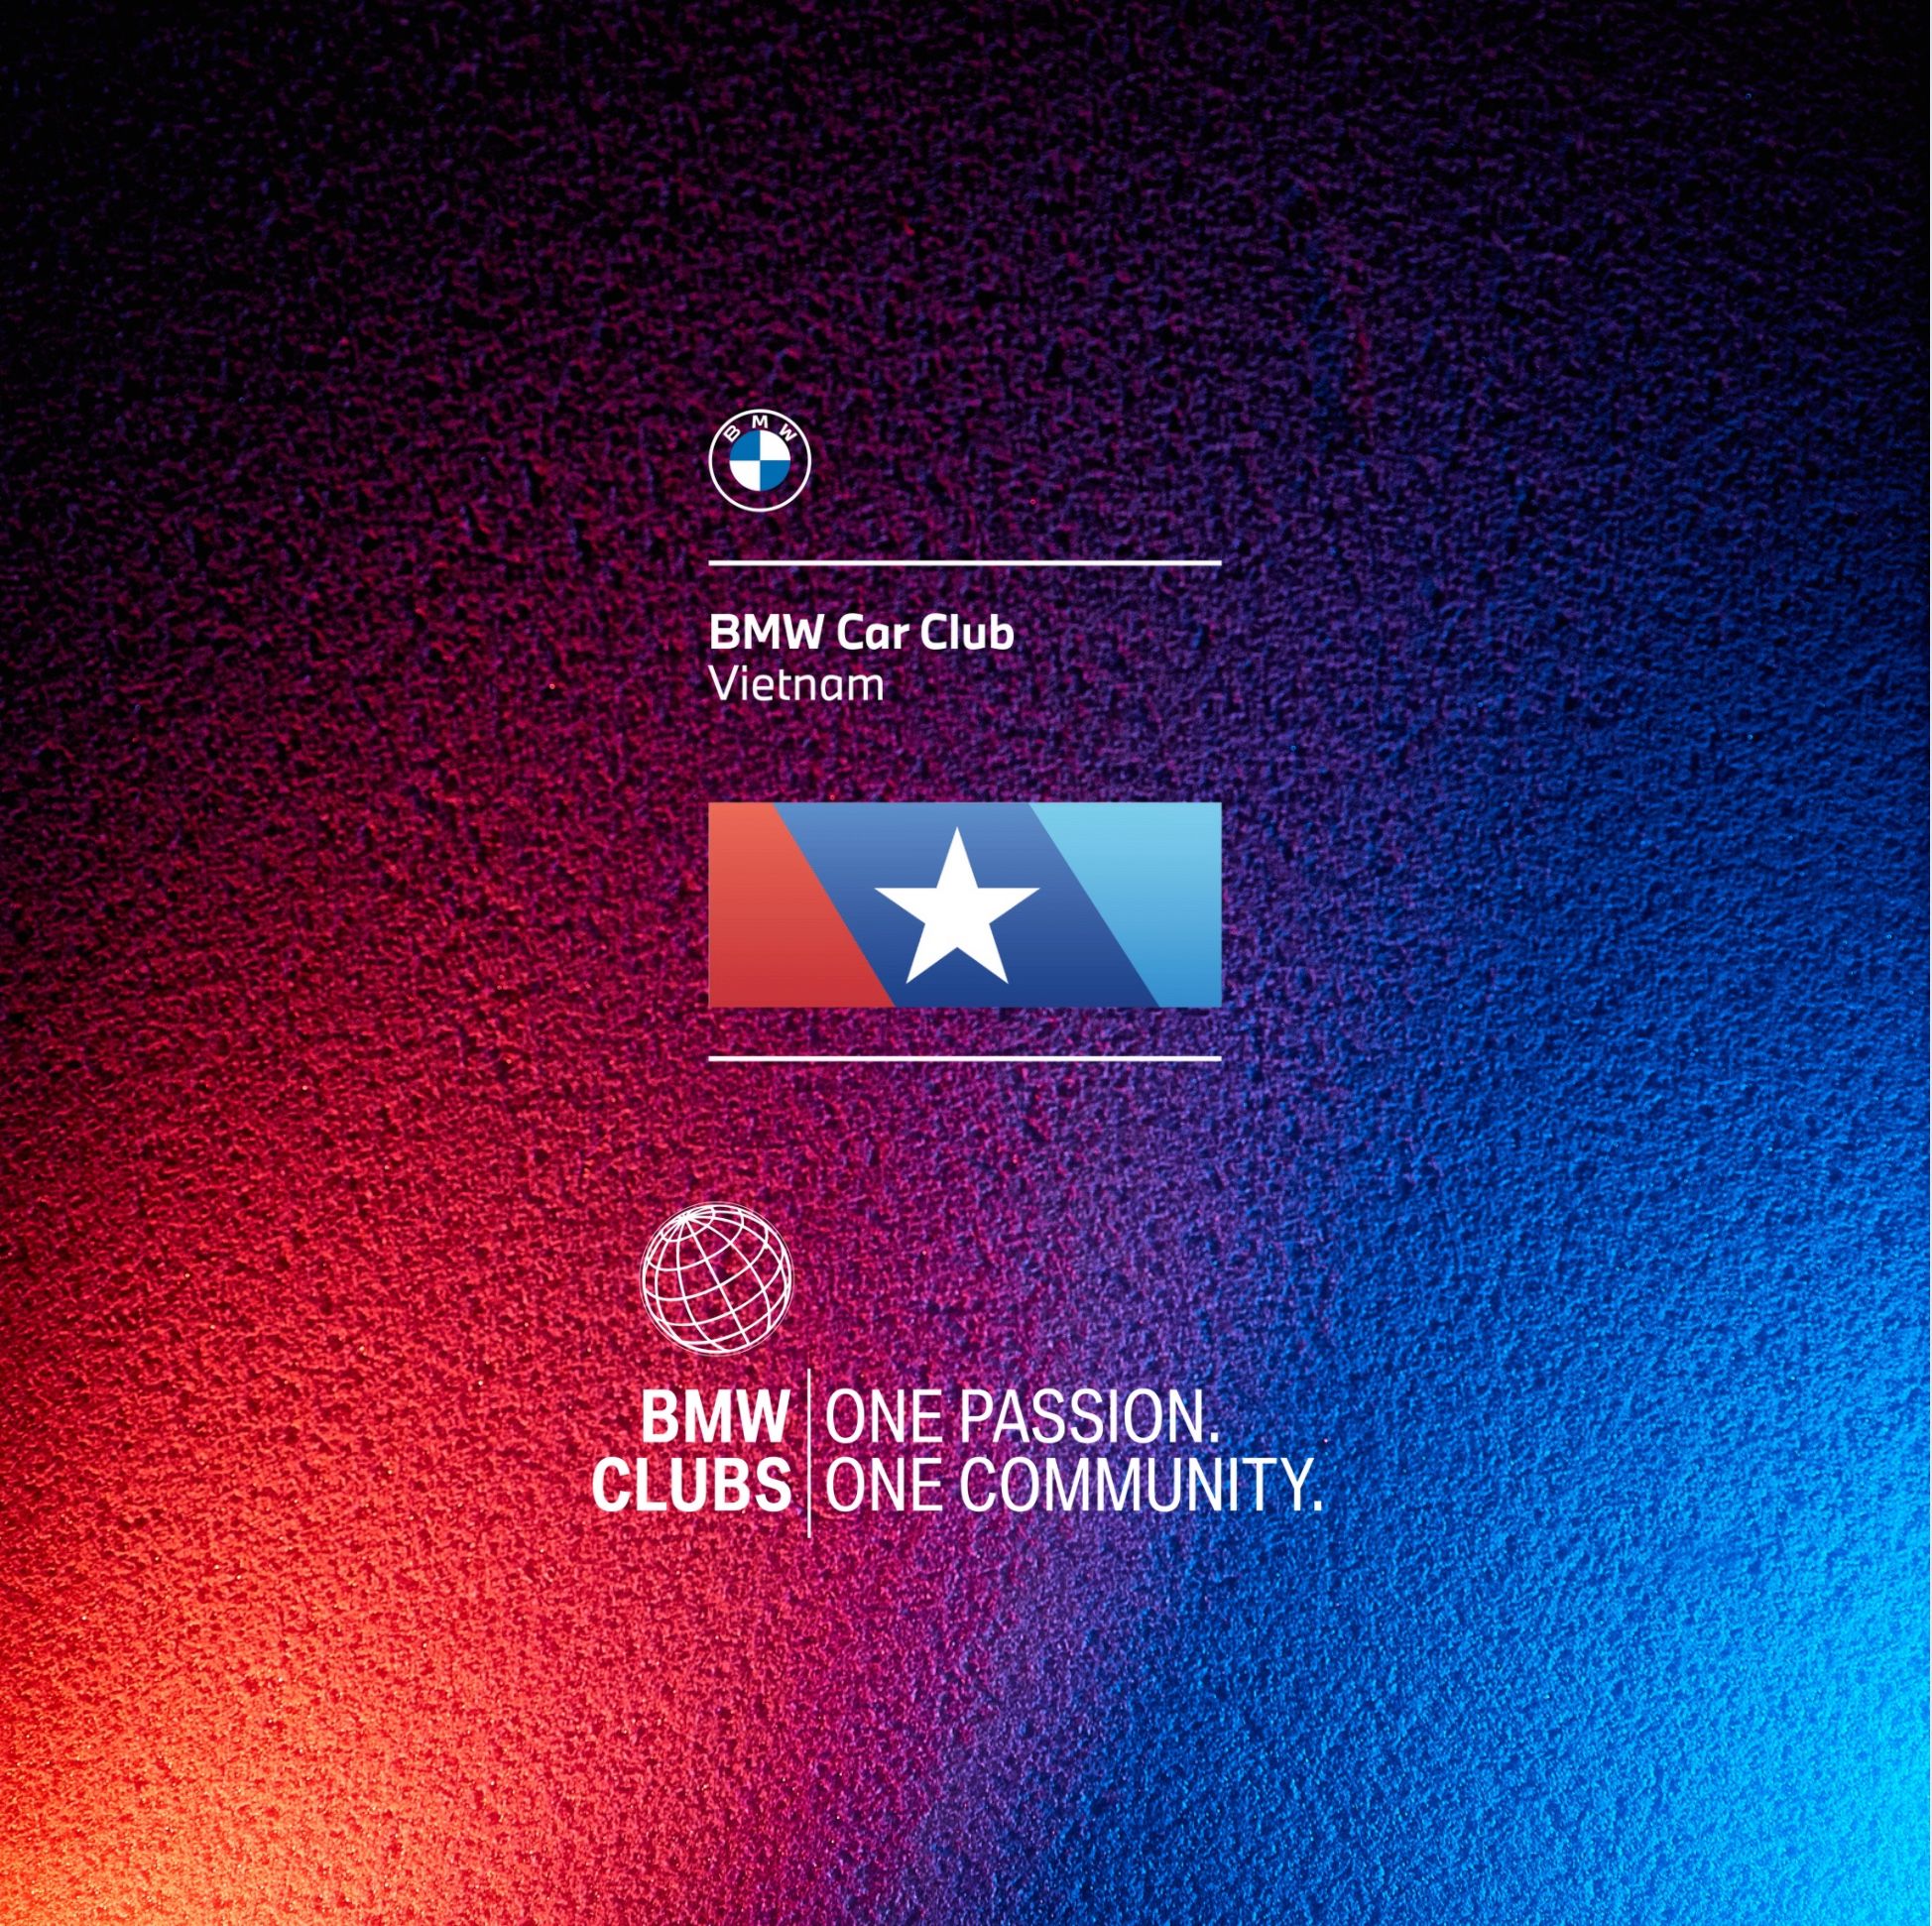 Giới thiệu về BMW Car Club Vietnam - câu lạc bộ xe BMW chính thức tại Việt Nam